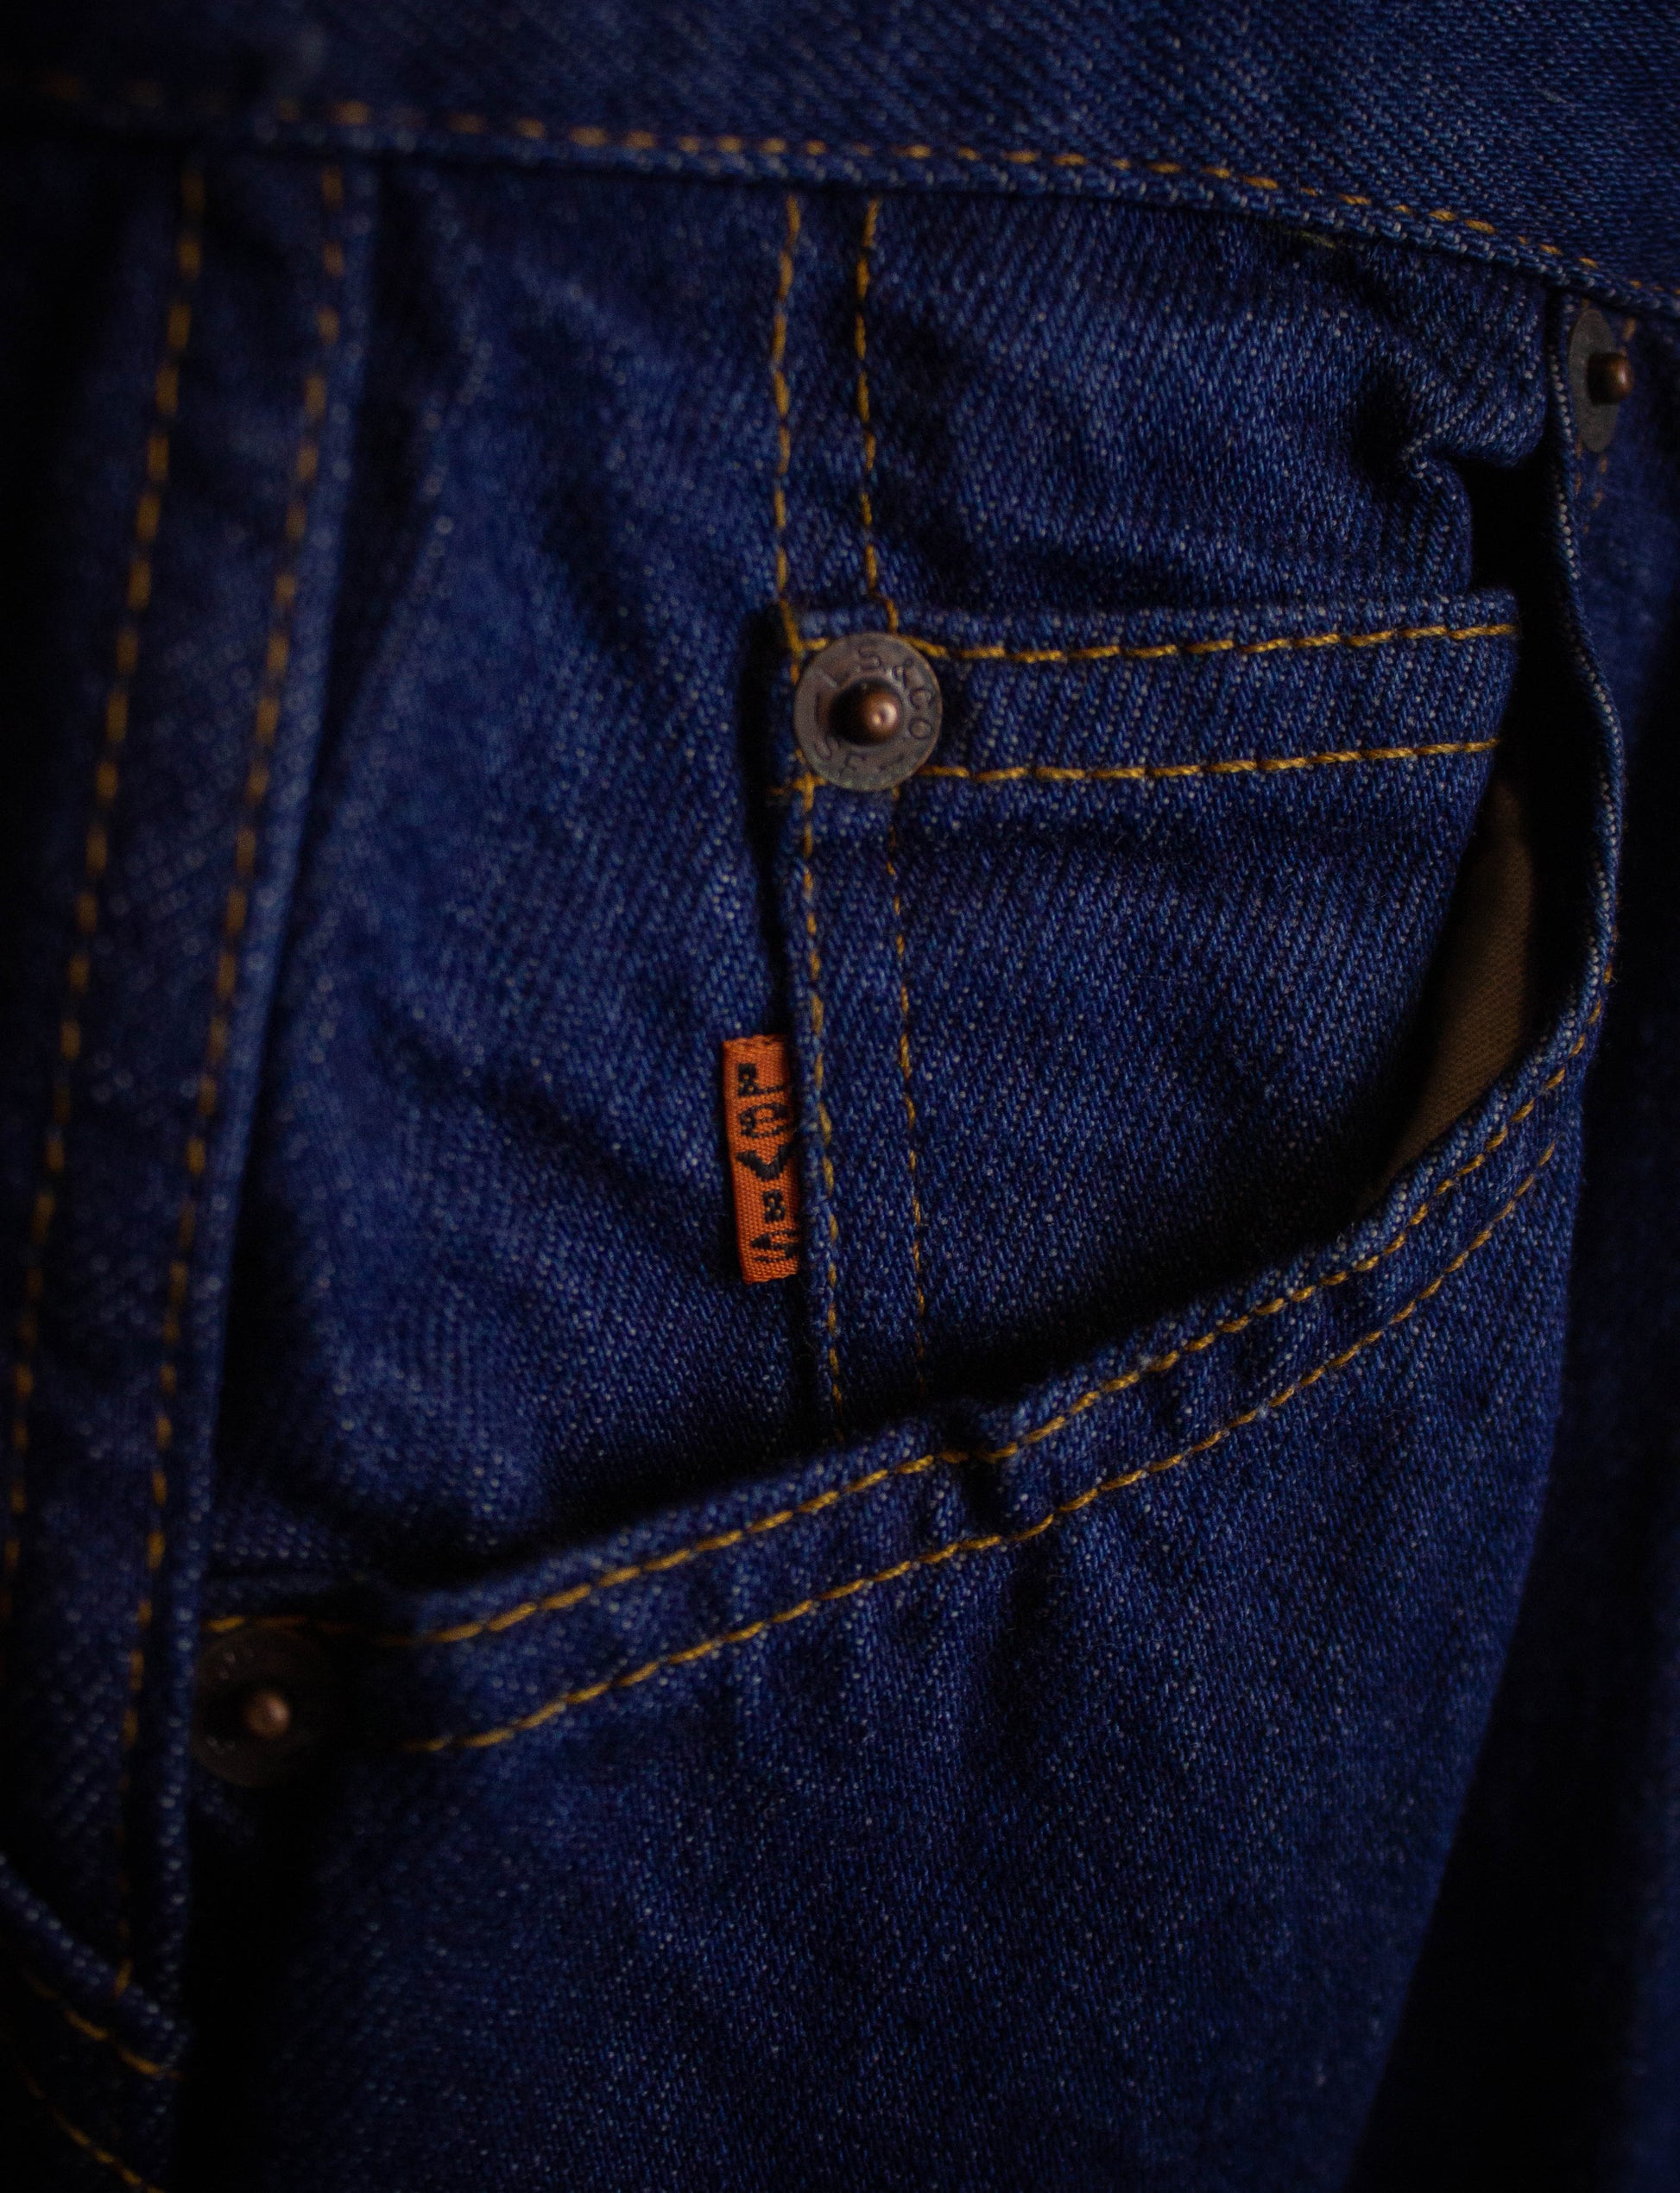 Vintage Levi's Deadstock Orange Tab Saddleback Denim Jeans 1977 Dark Wash 24x33